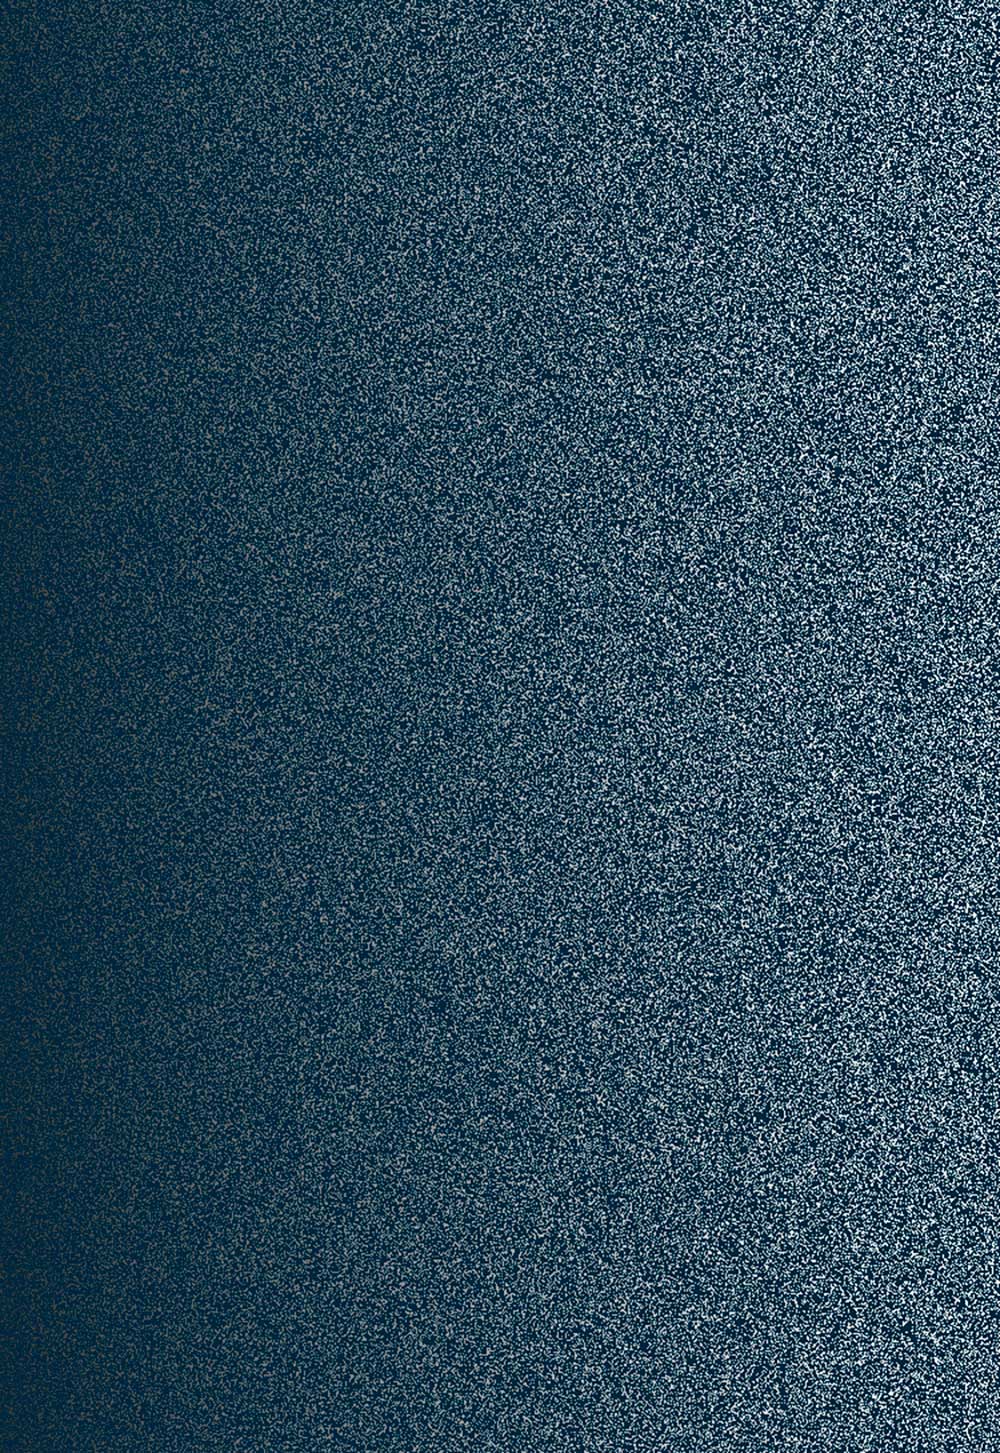 Disco Glitter Wallpaper - Navy - by Julien Macdonald